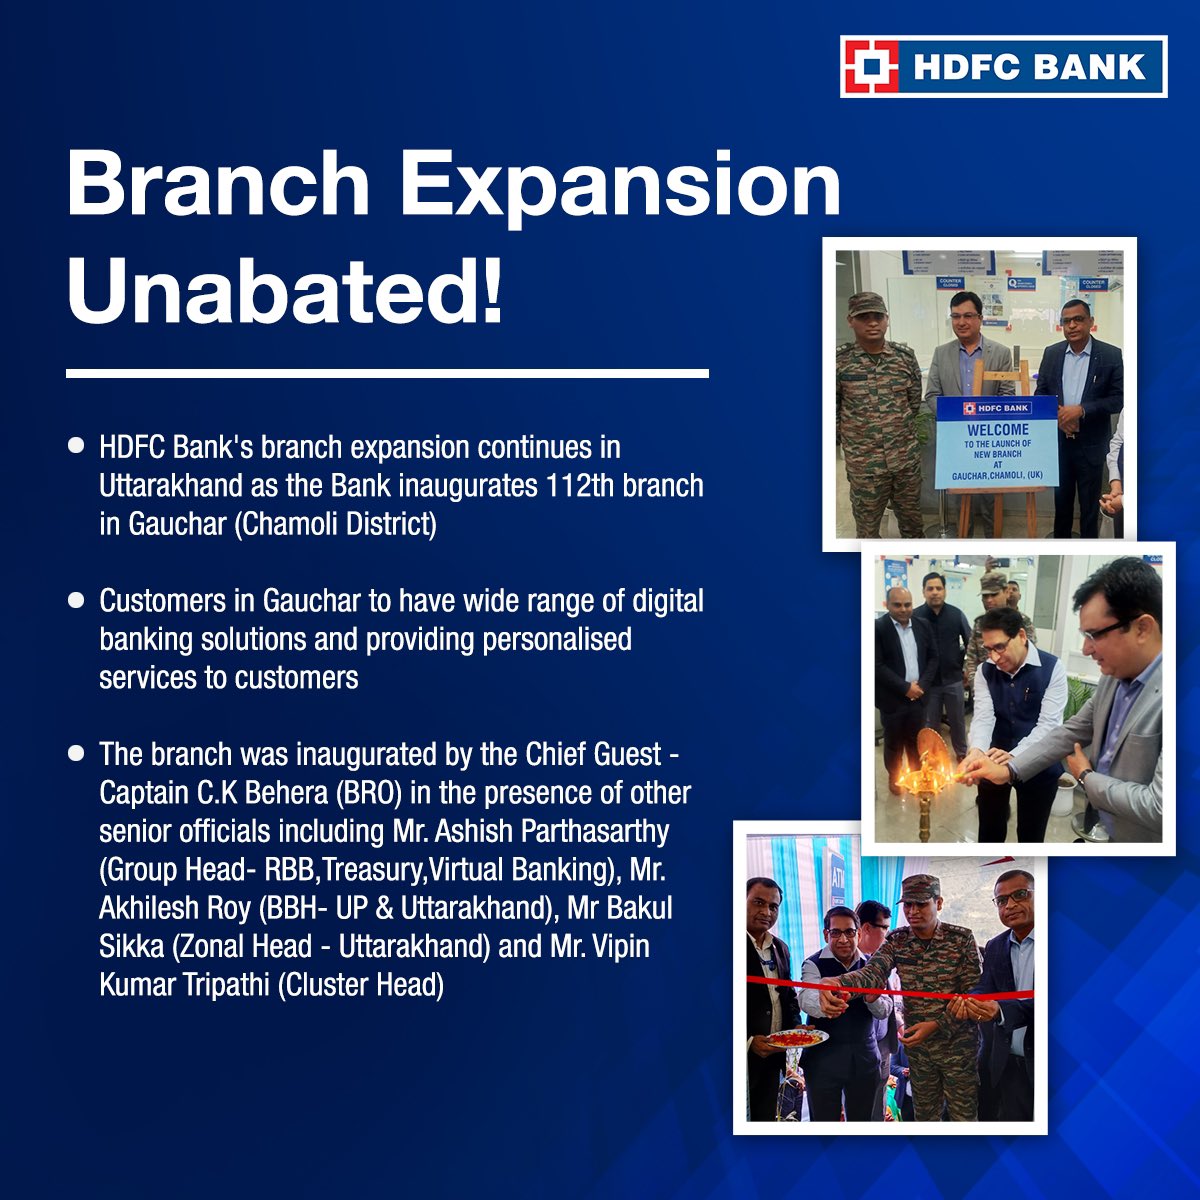 HDFC Bank Opens 112th Branch in Uttarakhand #HDFCBank #News #BranchExpansion #Uttarakhand